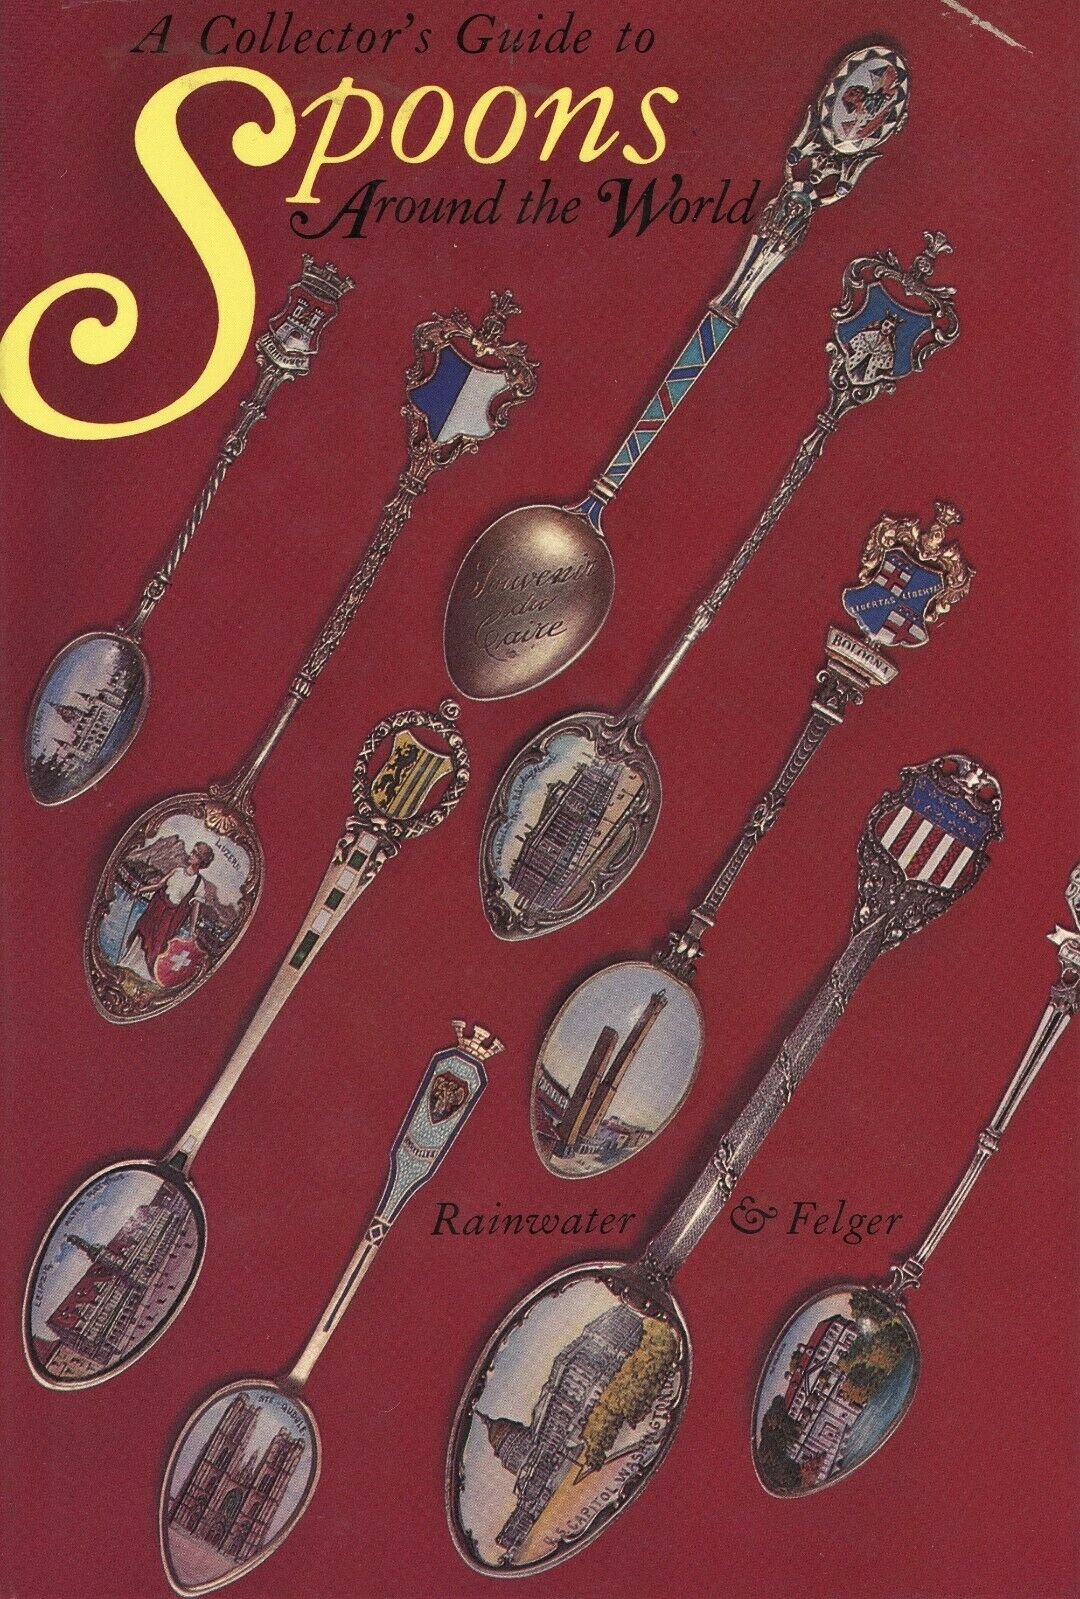 2,000+ Ea. Antique Silver Souvenir Historical Spoons / Former Library Book